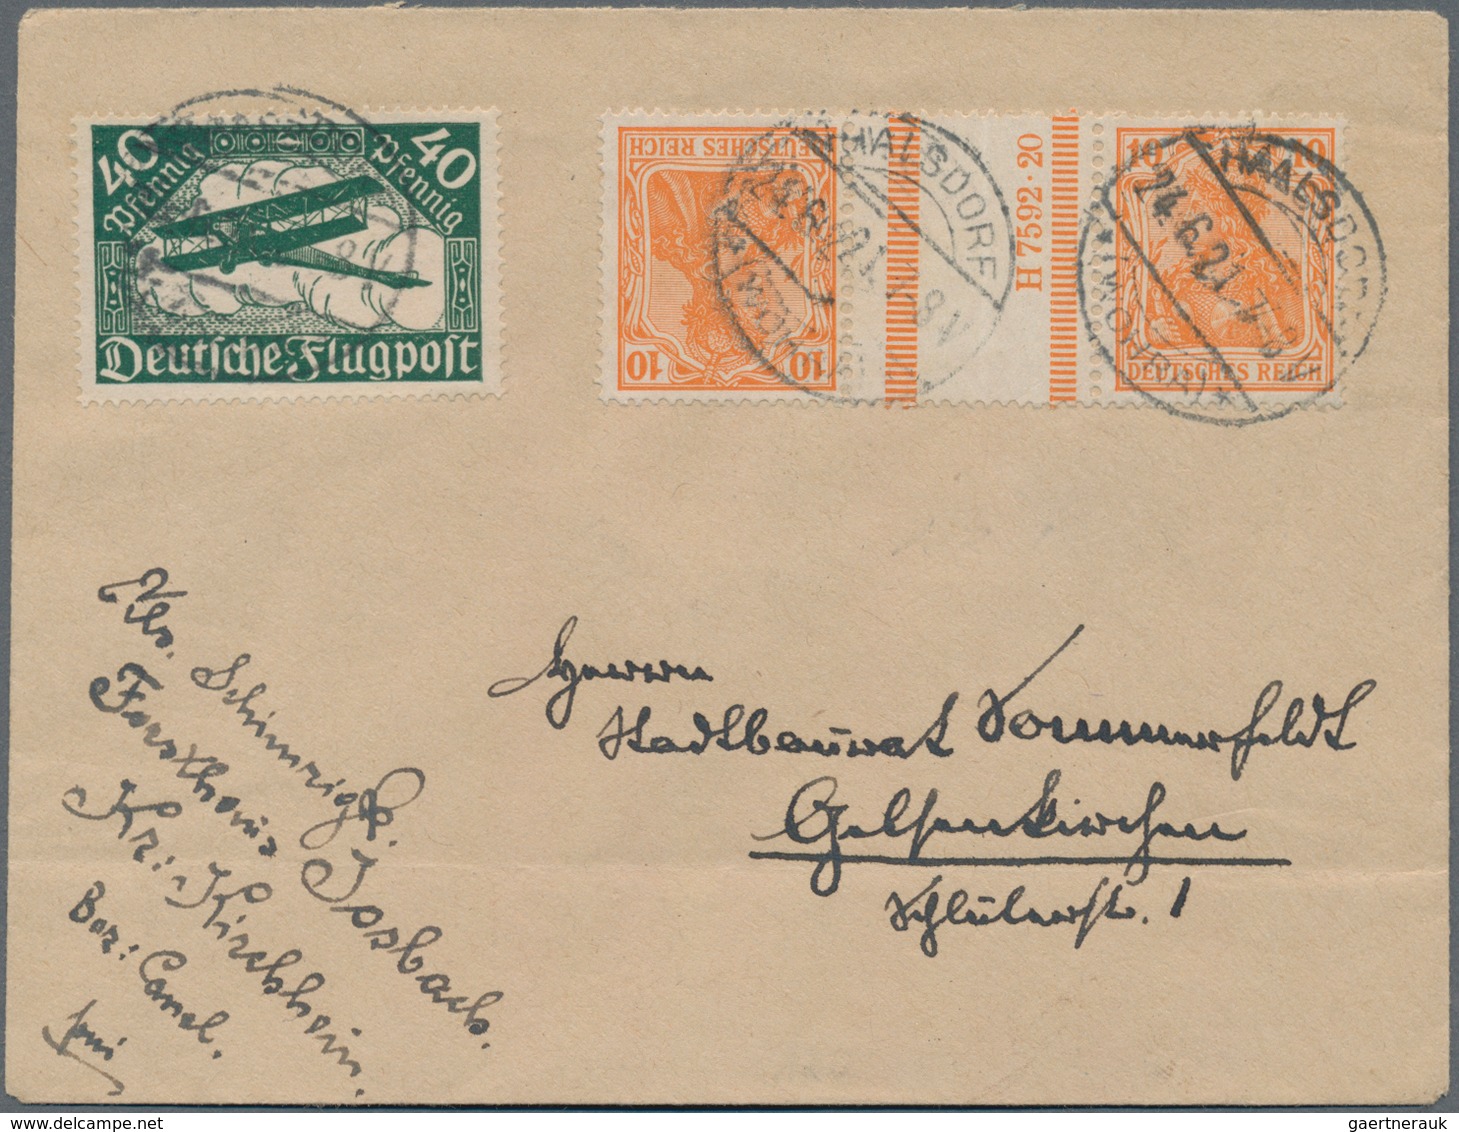 Deutsches Reich: 1880/1945 ca., hochwertiger Sammlungbestand mit ca.130 Belegen, dabei sehr viele be